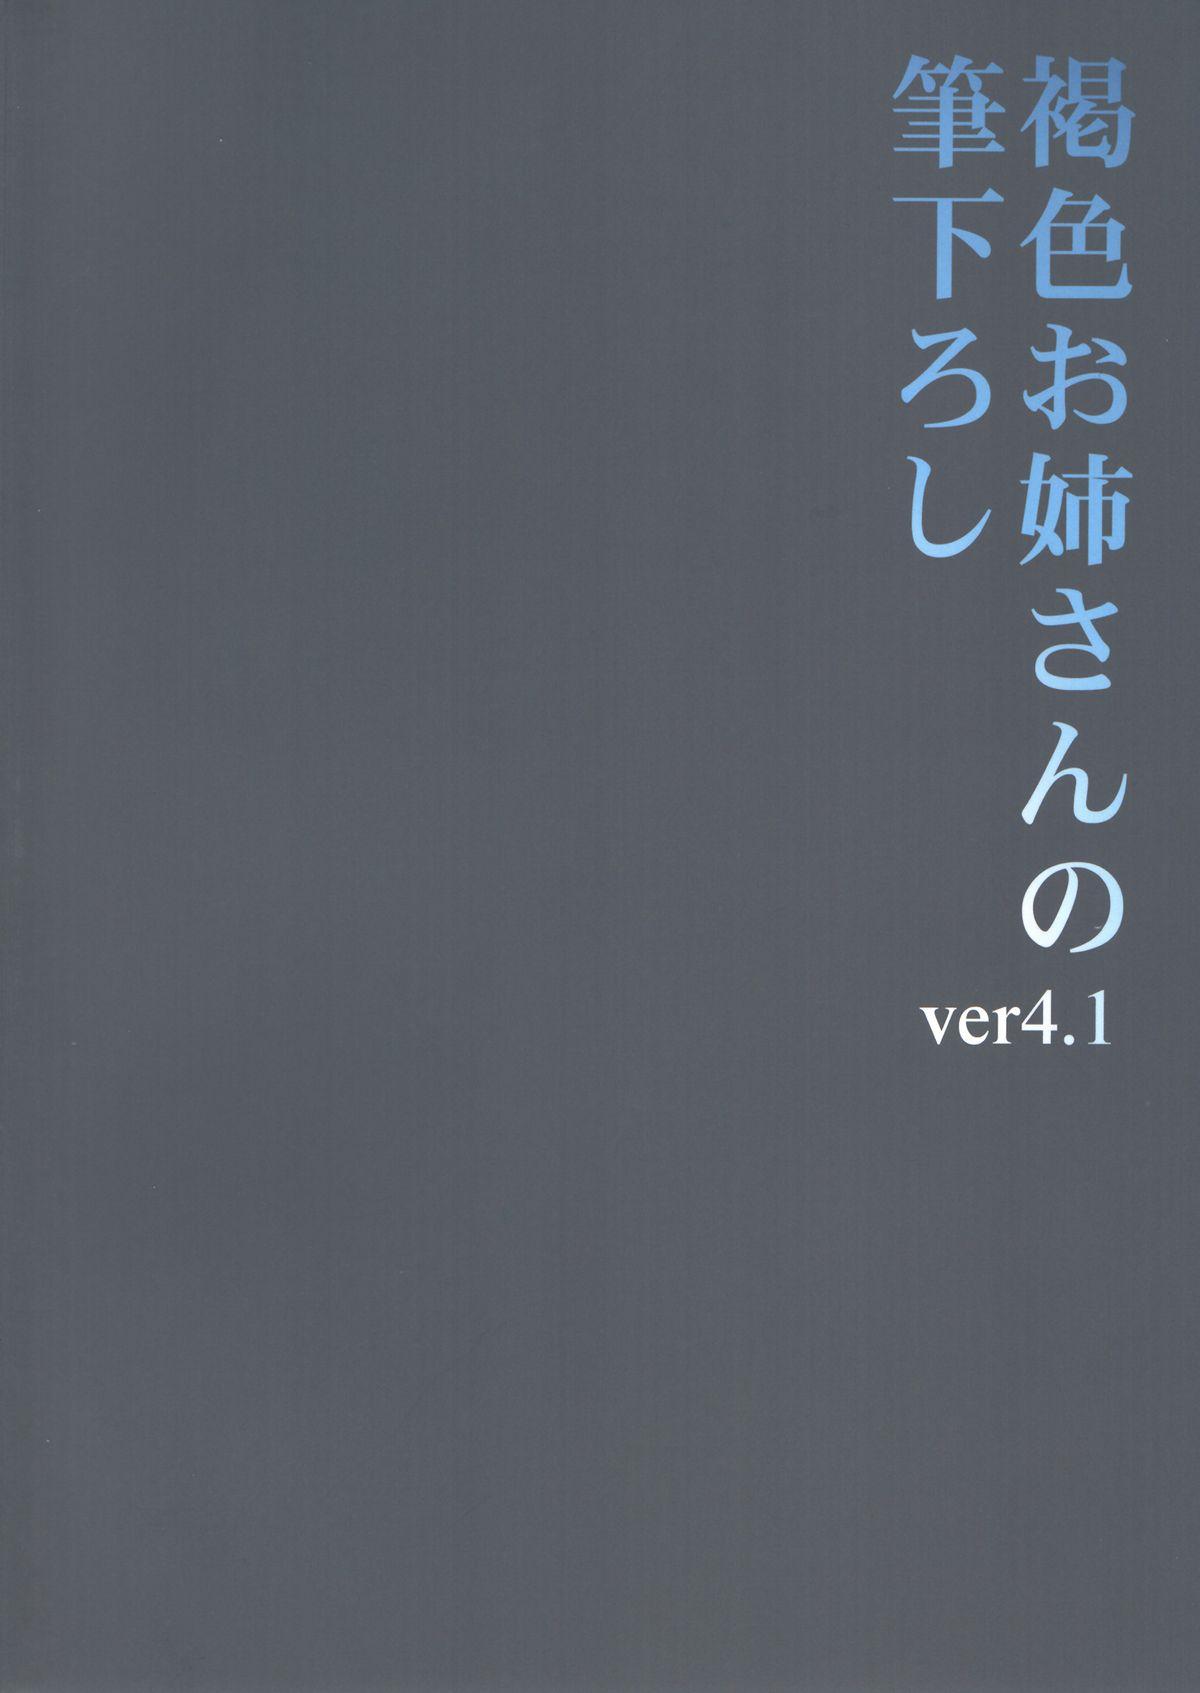 Kasshoku Oneesan no Fudeoroshi Ver.4.1 1